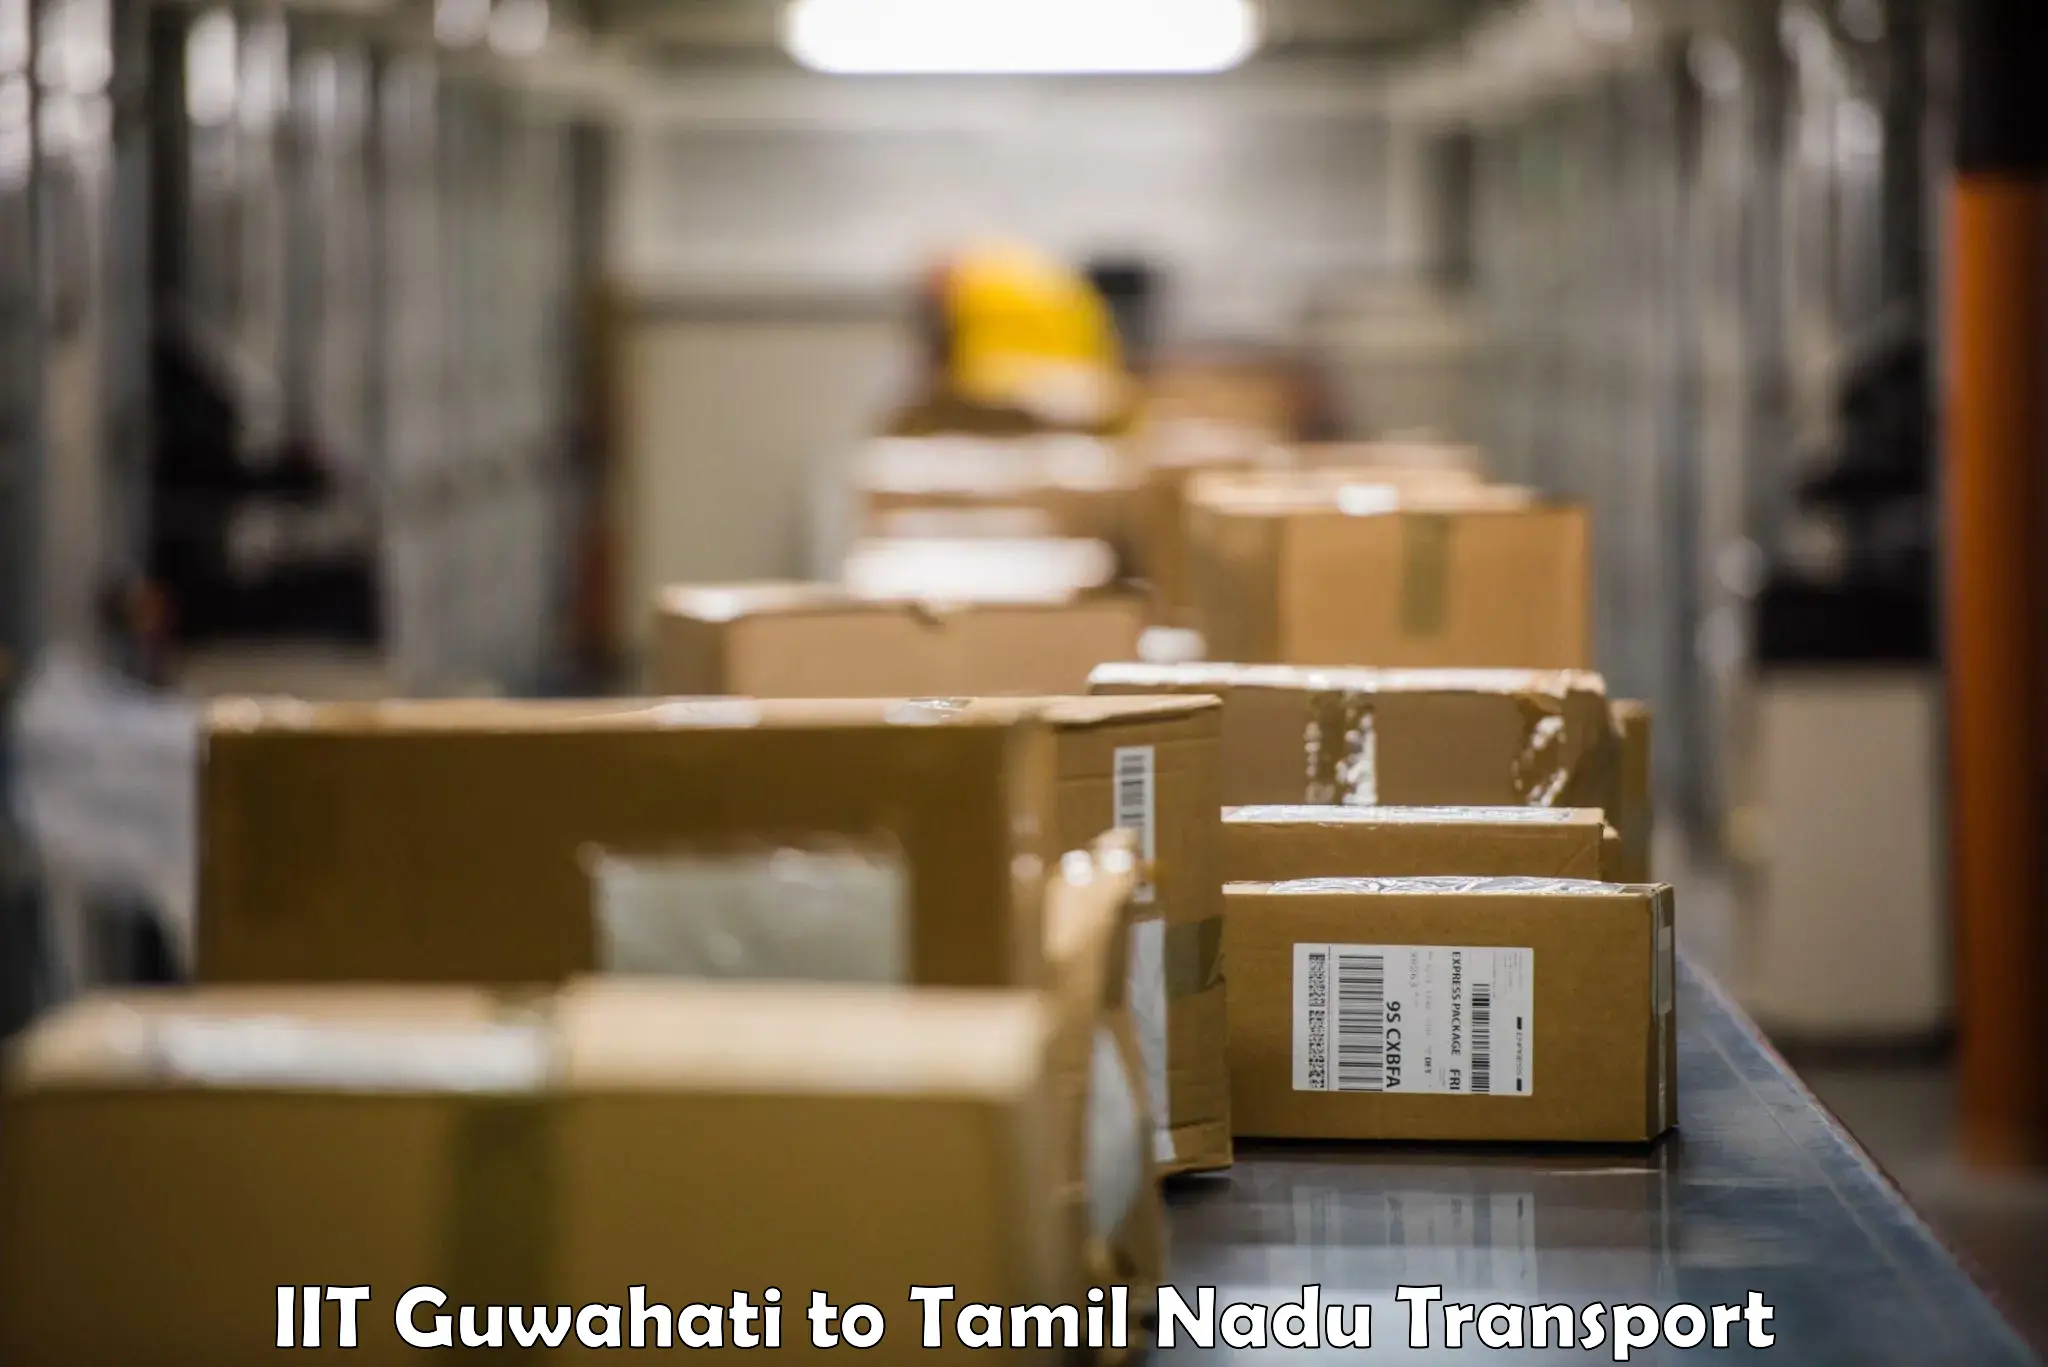 Daily transport service IIT Guwahati to Thiruthuraipoondi